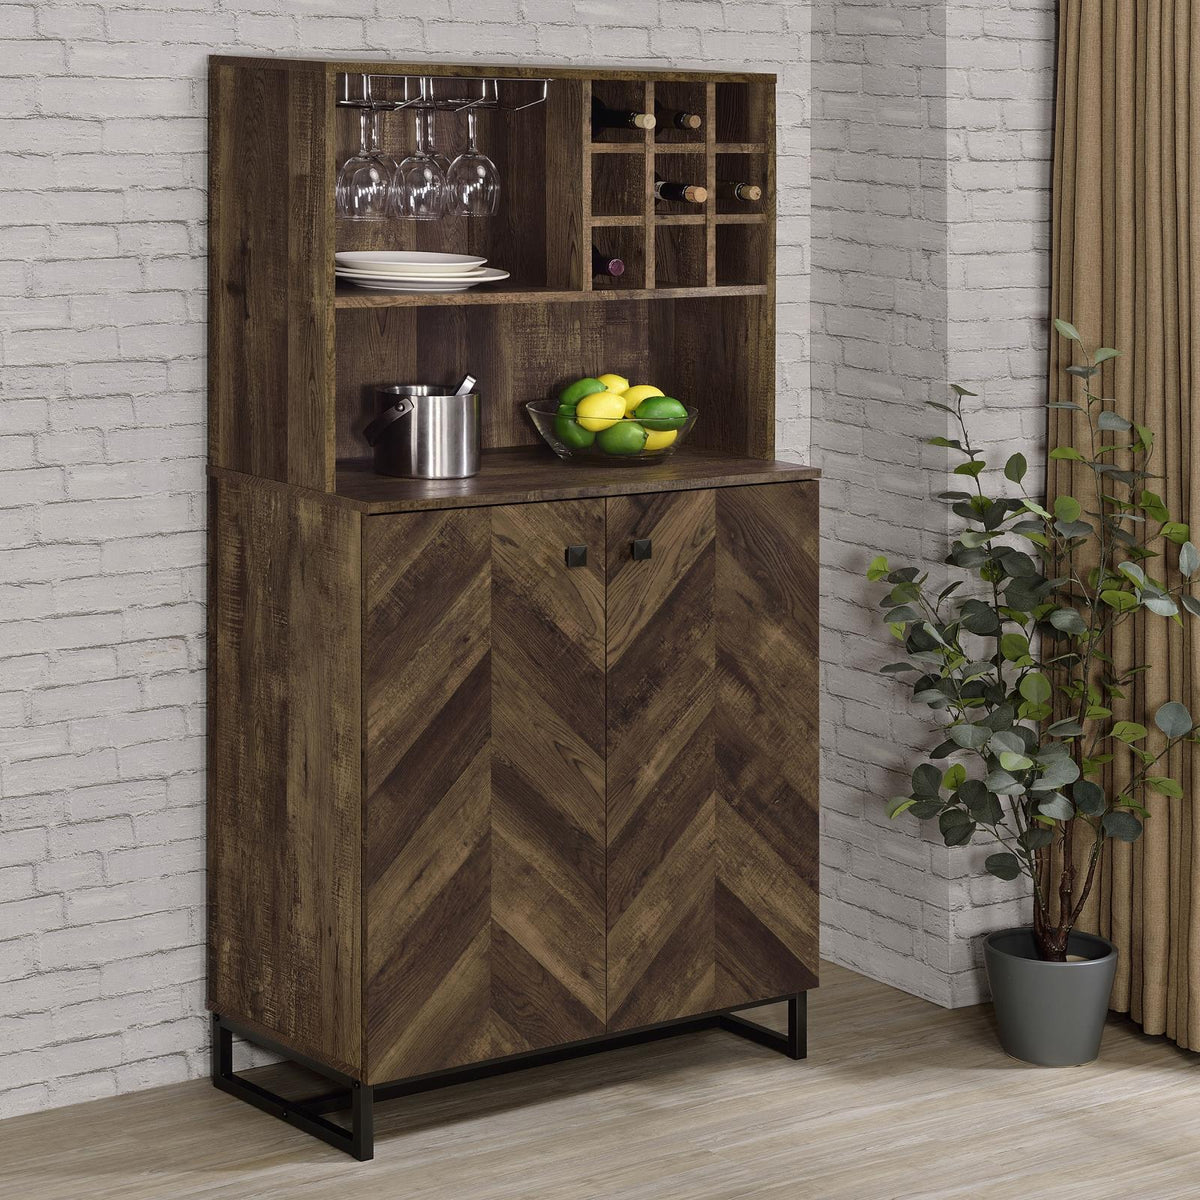 Mendoza 2-door Wine Cabinet Rustic Oak Herringbone and Gunmetal - Half Price Furniture